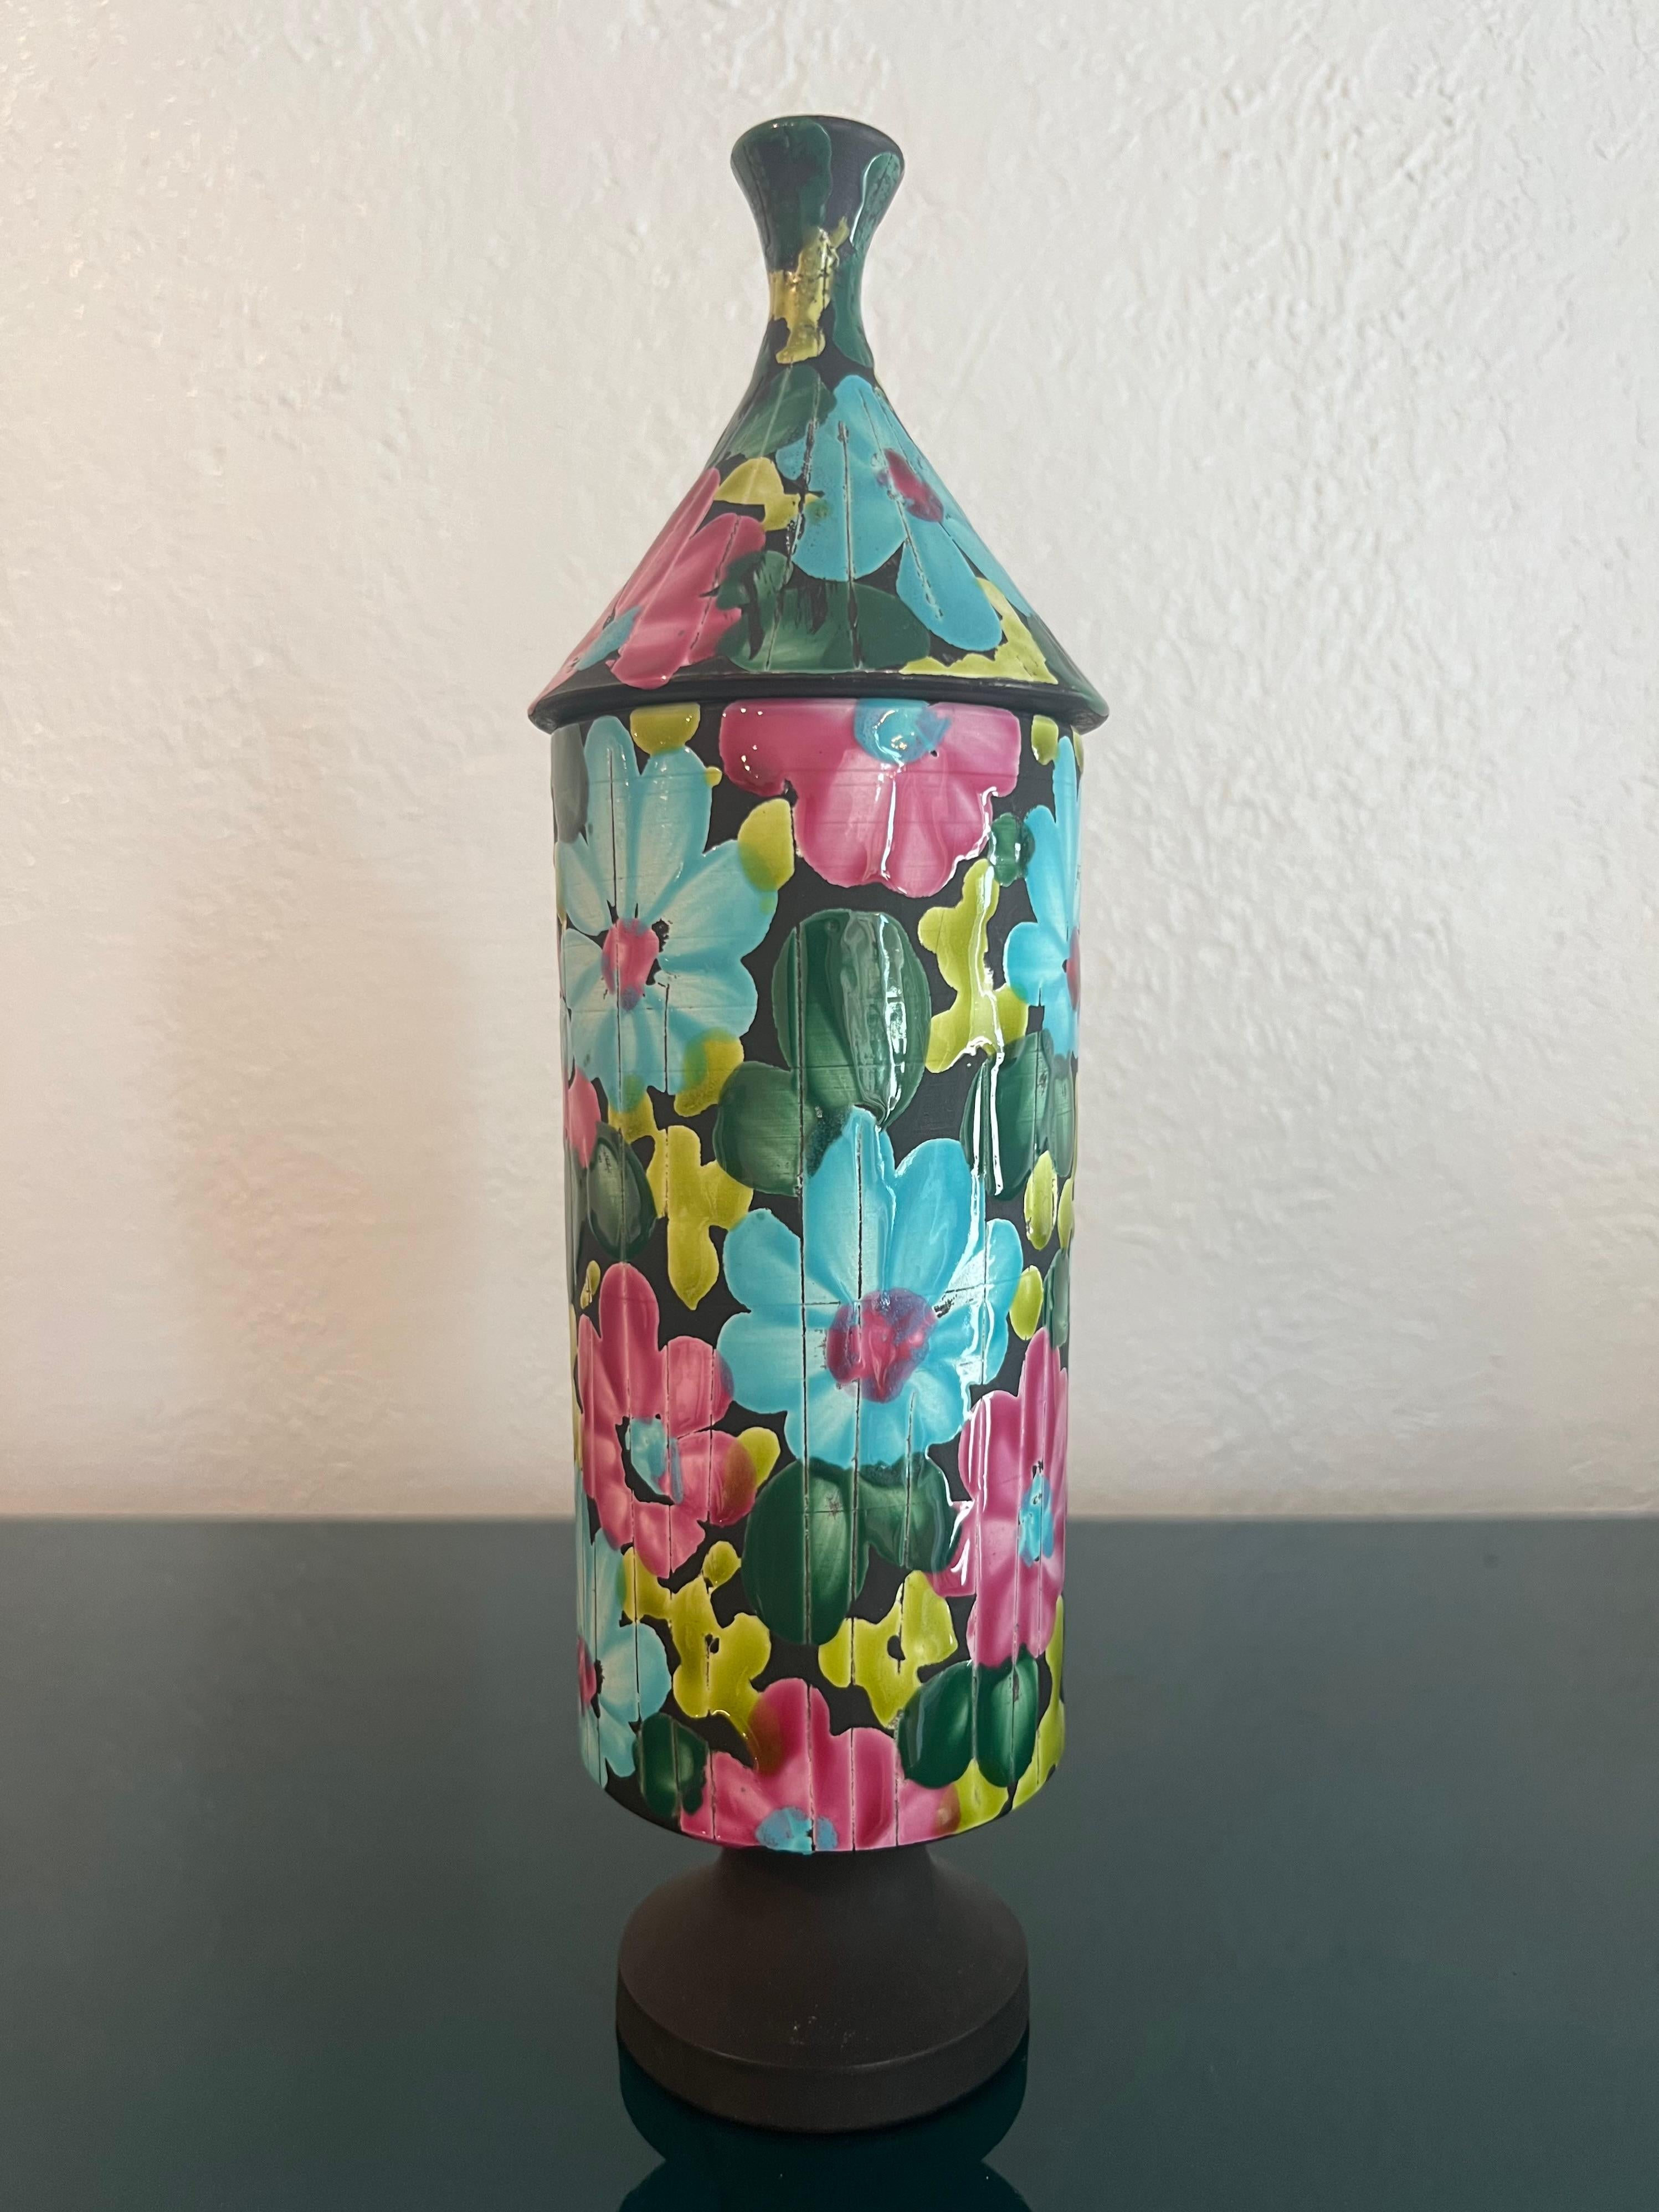 Vase à couvercle Alvino Bagni avec un brillant motif floral. Petite zone sur la base où la glaçure ne s'est pas accrochée (voir photos). Des photos supplémentaires sont disponibles sur demande.

S'intègre parfaitement dans une variété d'intérieurs